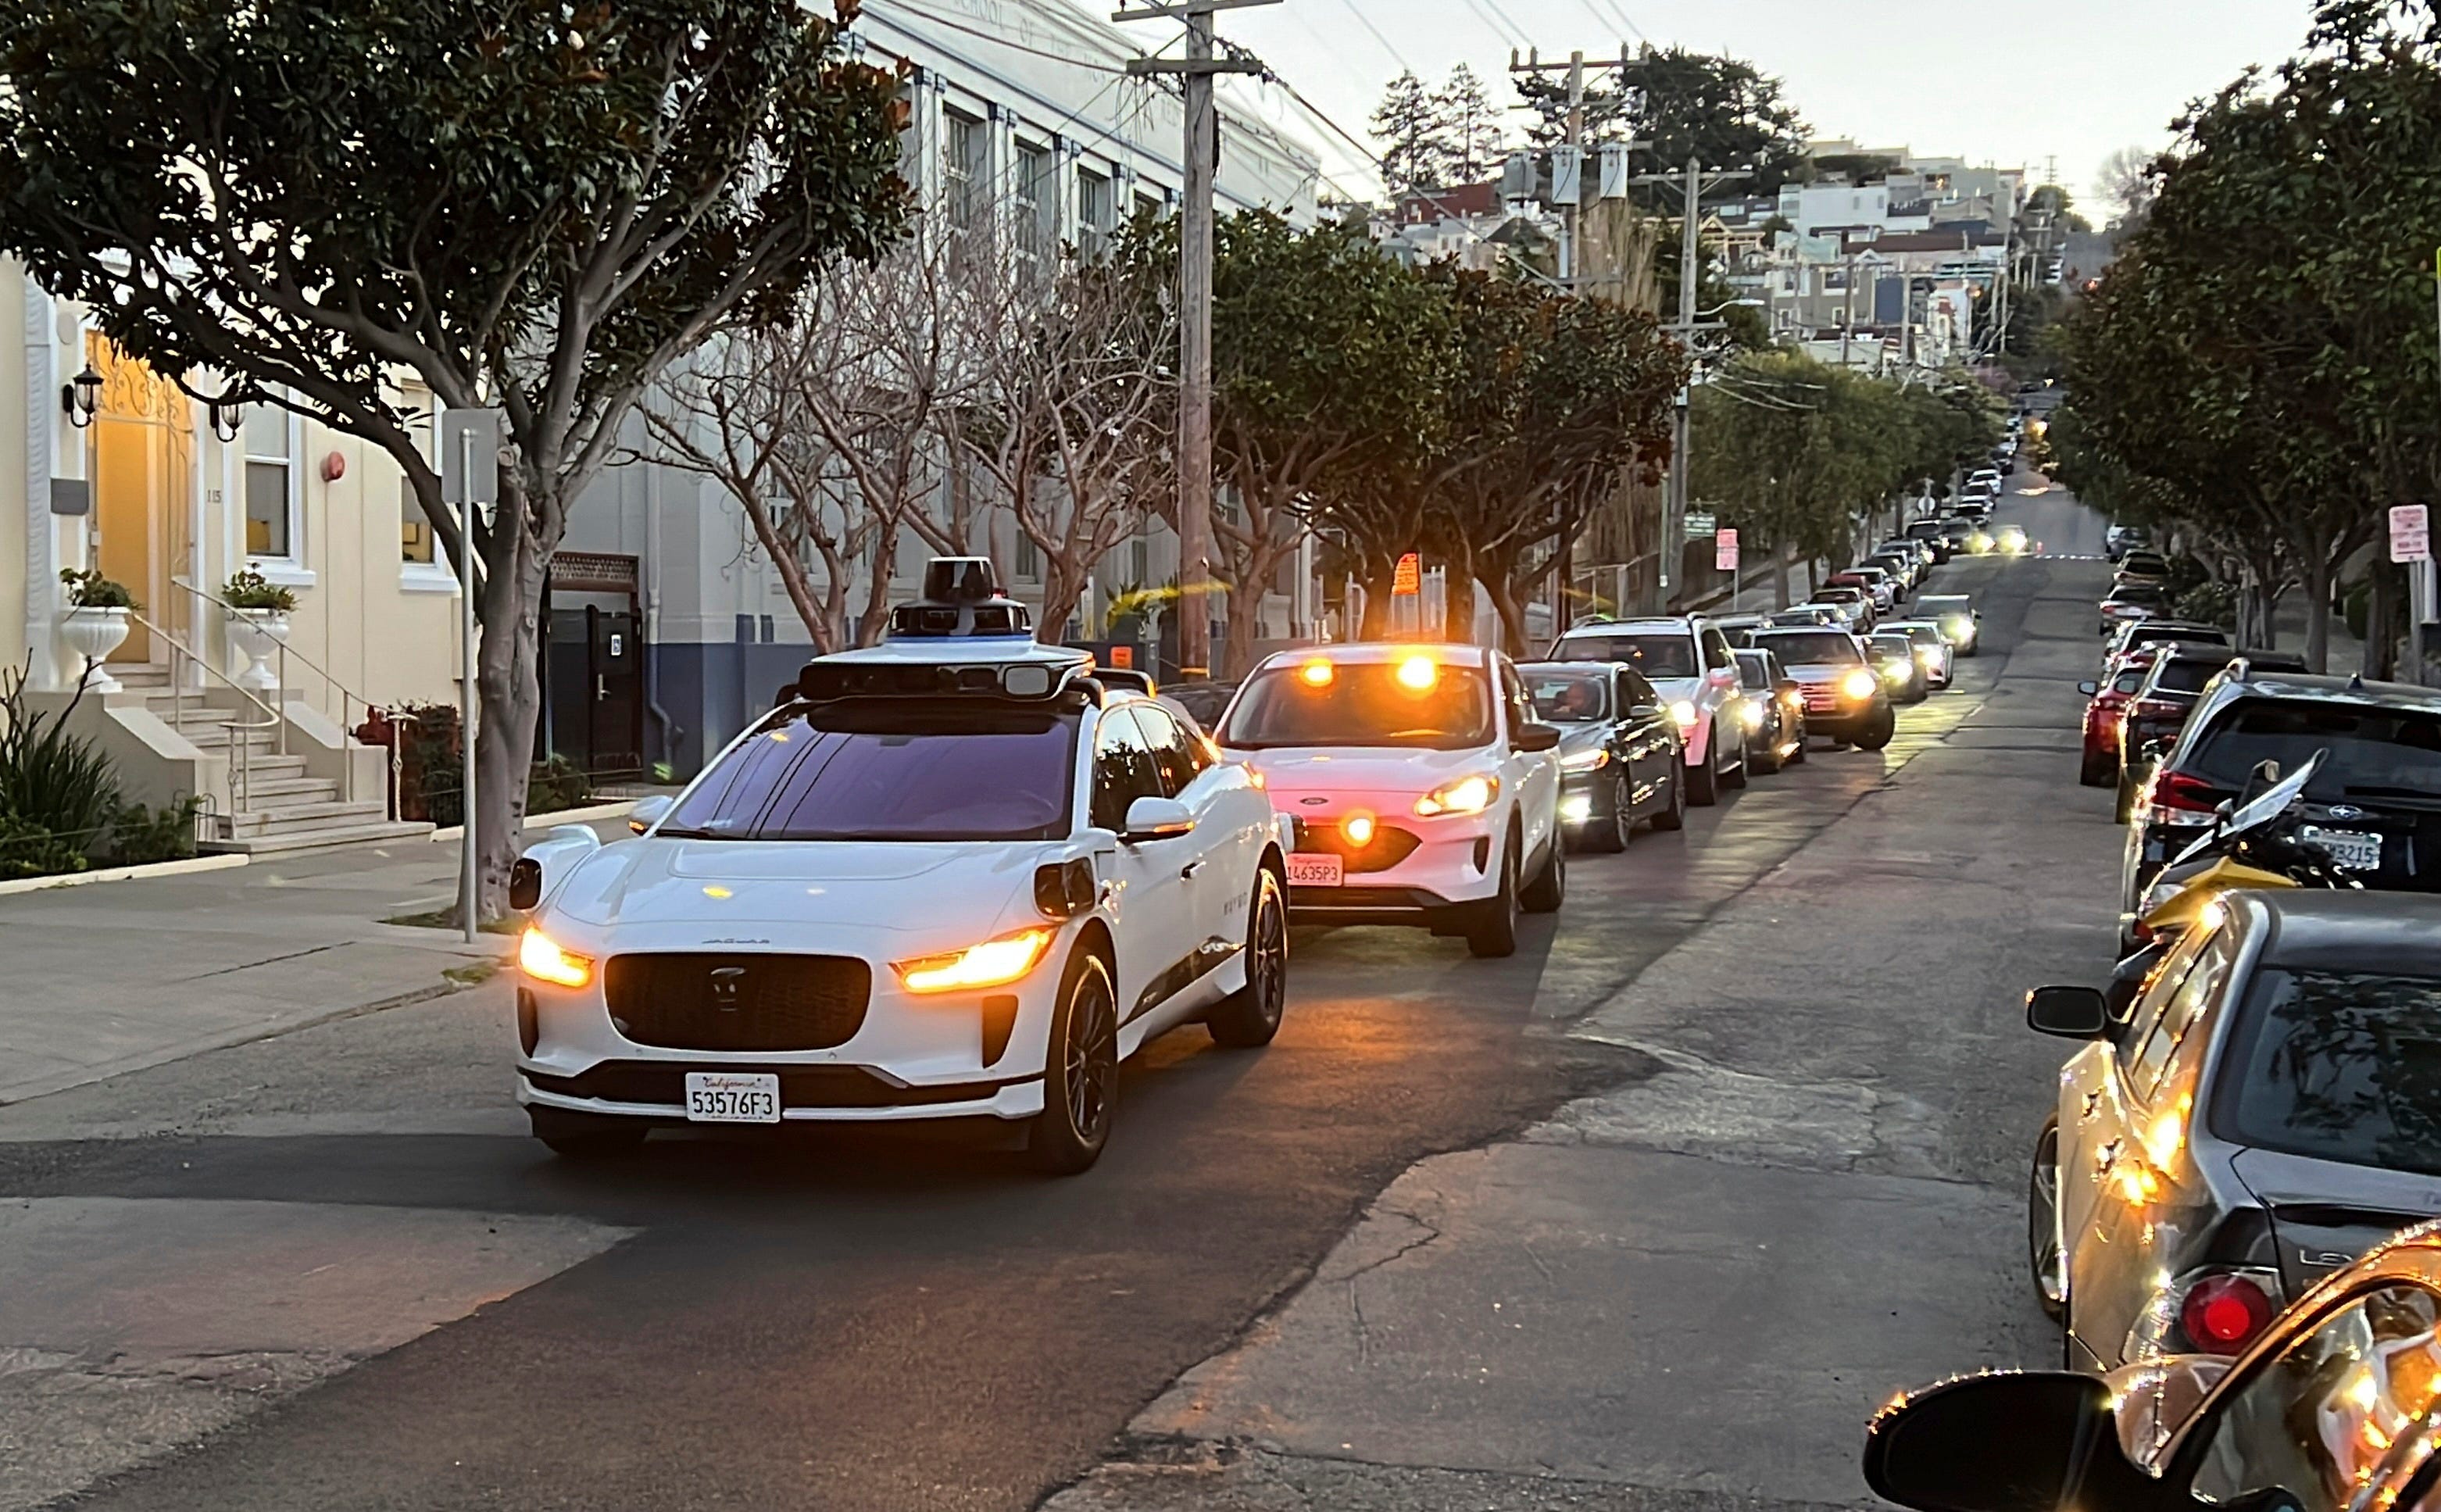 在城市街道上，一辆白色汽车挡住了后面等待的一排汽车。 这是一辆 Waymo 自动驾驶出租车。